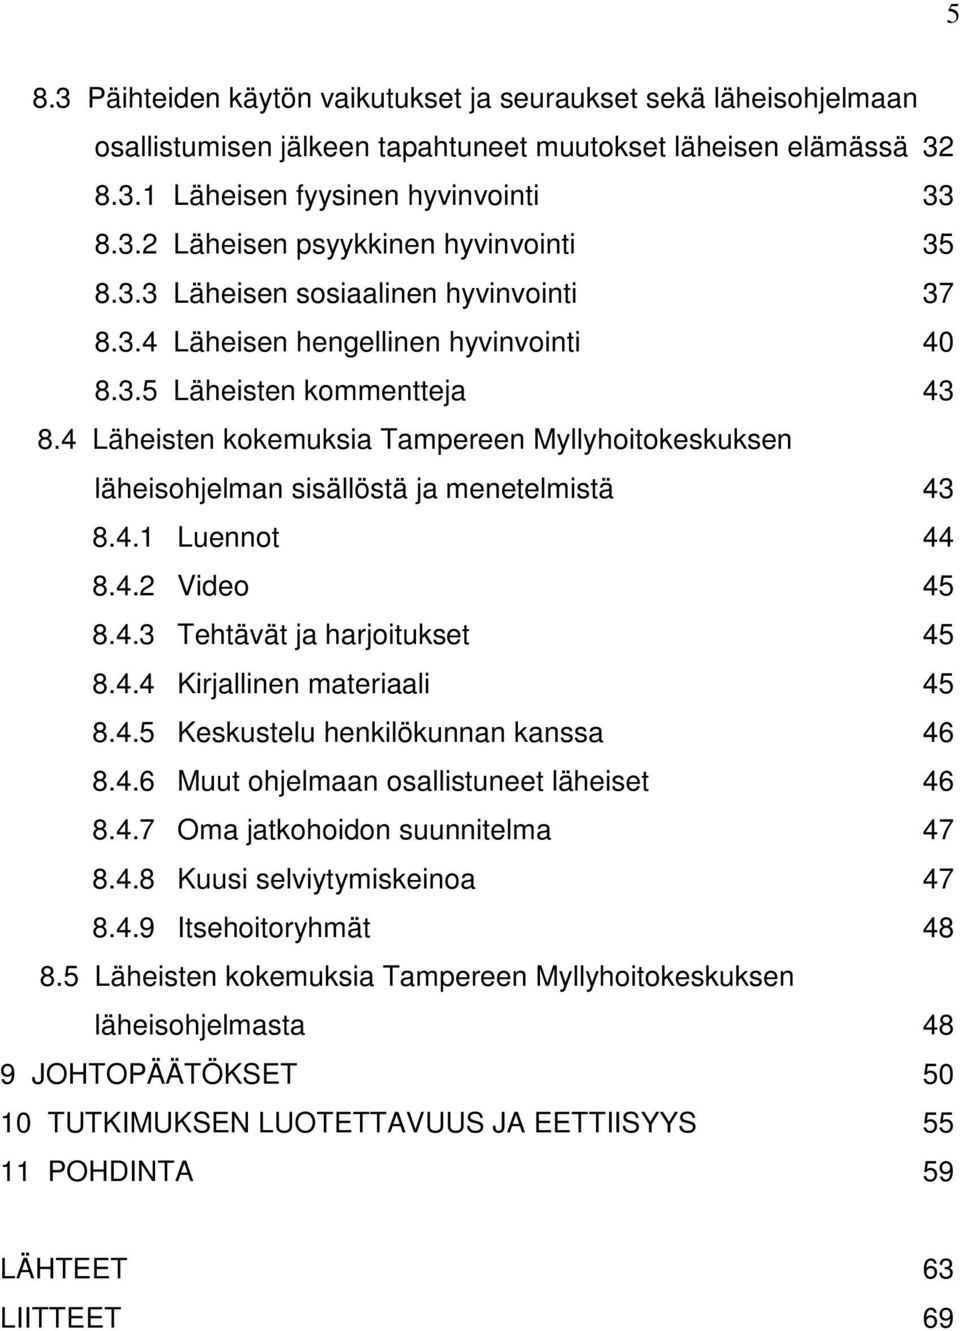 4 Läheisten kokemuksia Tampereen Myllyhoitokeskuksen läheisohjelman sisällöstä ja menetelmistä 43 8.4.1 Luennot 44 8.4.2 Video 45 8.4.3 Tehtävät ja harjoitukset 45 8.4.4 Kirjallinen materiaali 45 8.4.5 Keskustelu henkilökunnan kanssa 46 8.